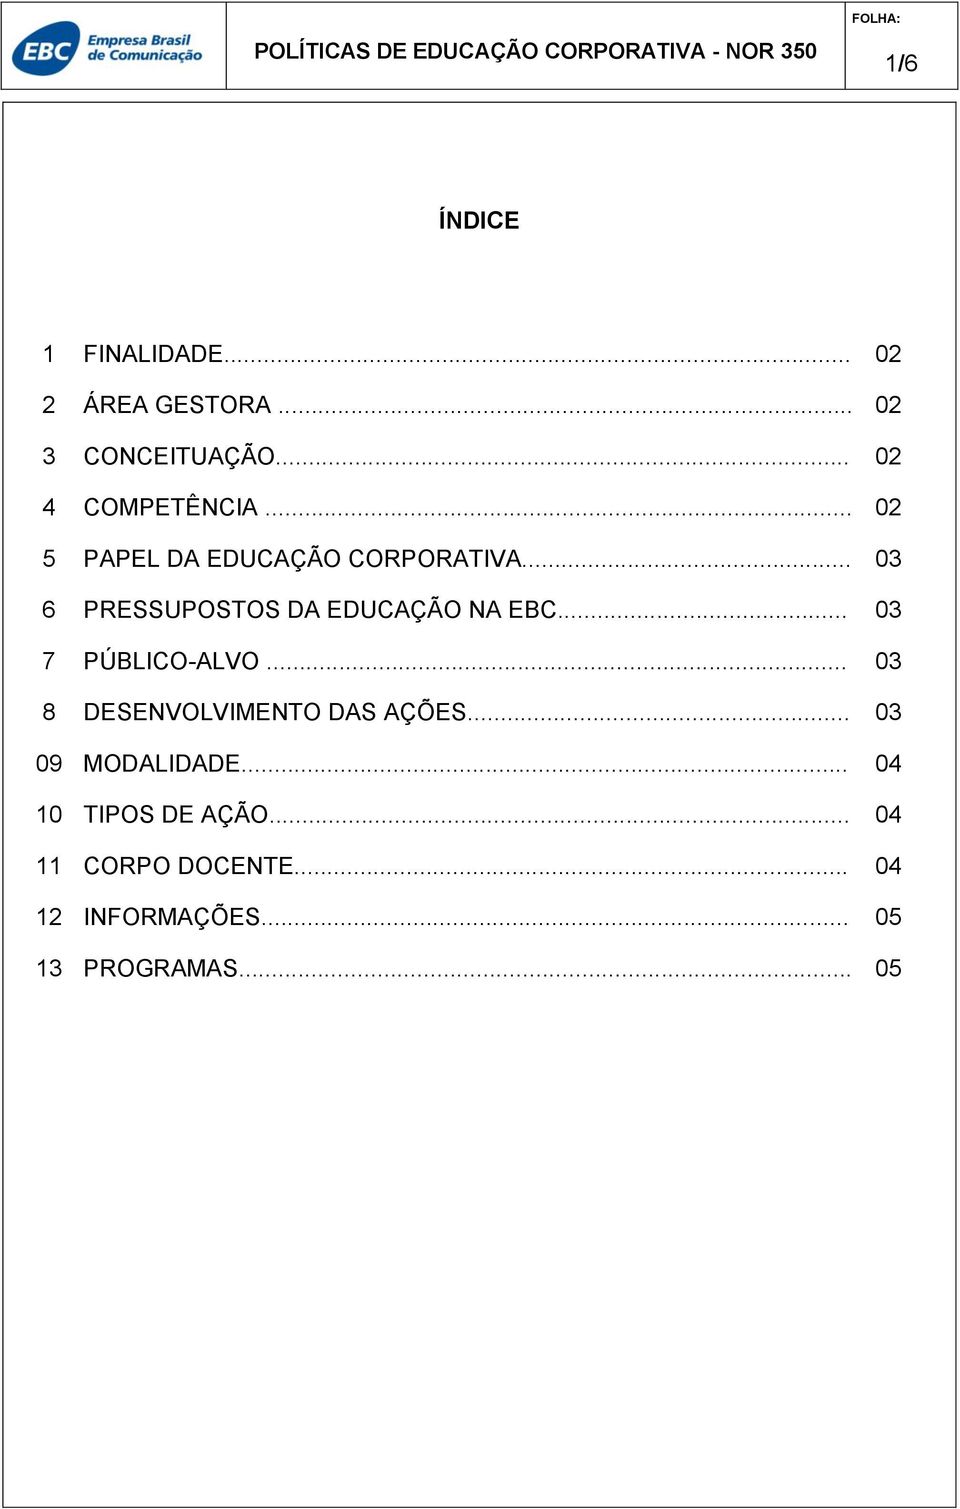 .. 03 6 PRESSUPOSTOS DA EDUCAÇÃO NA EBC... 03 7 PÚBLICO-ALVO.